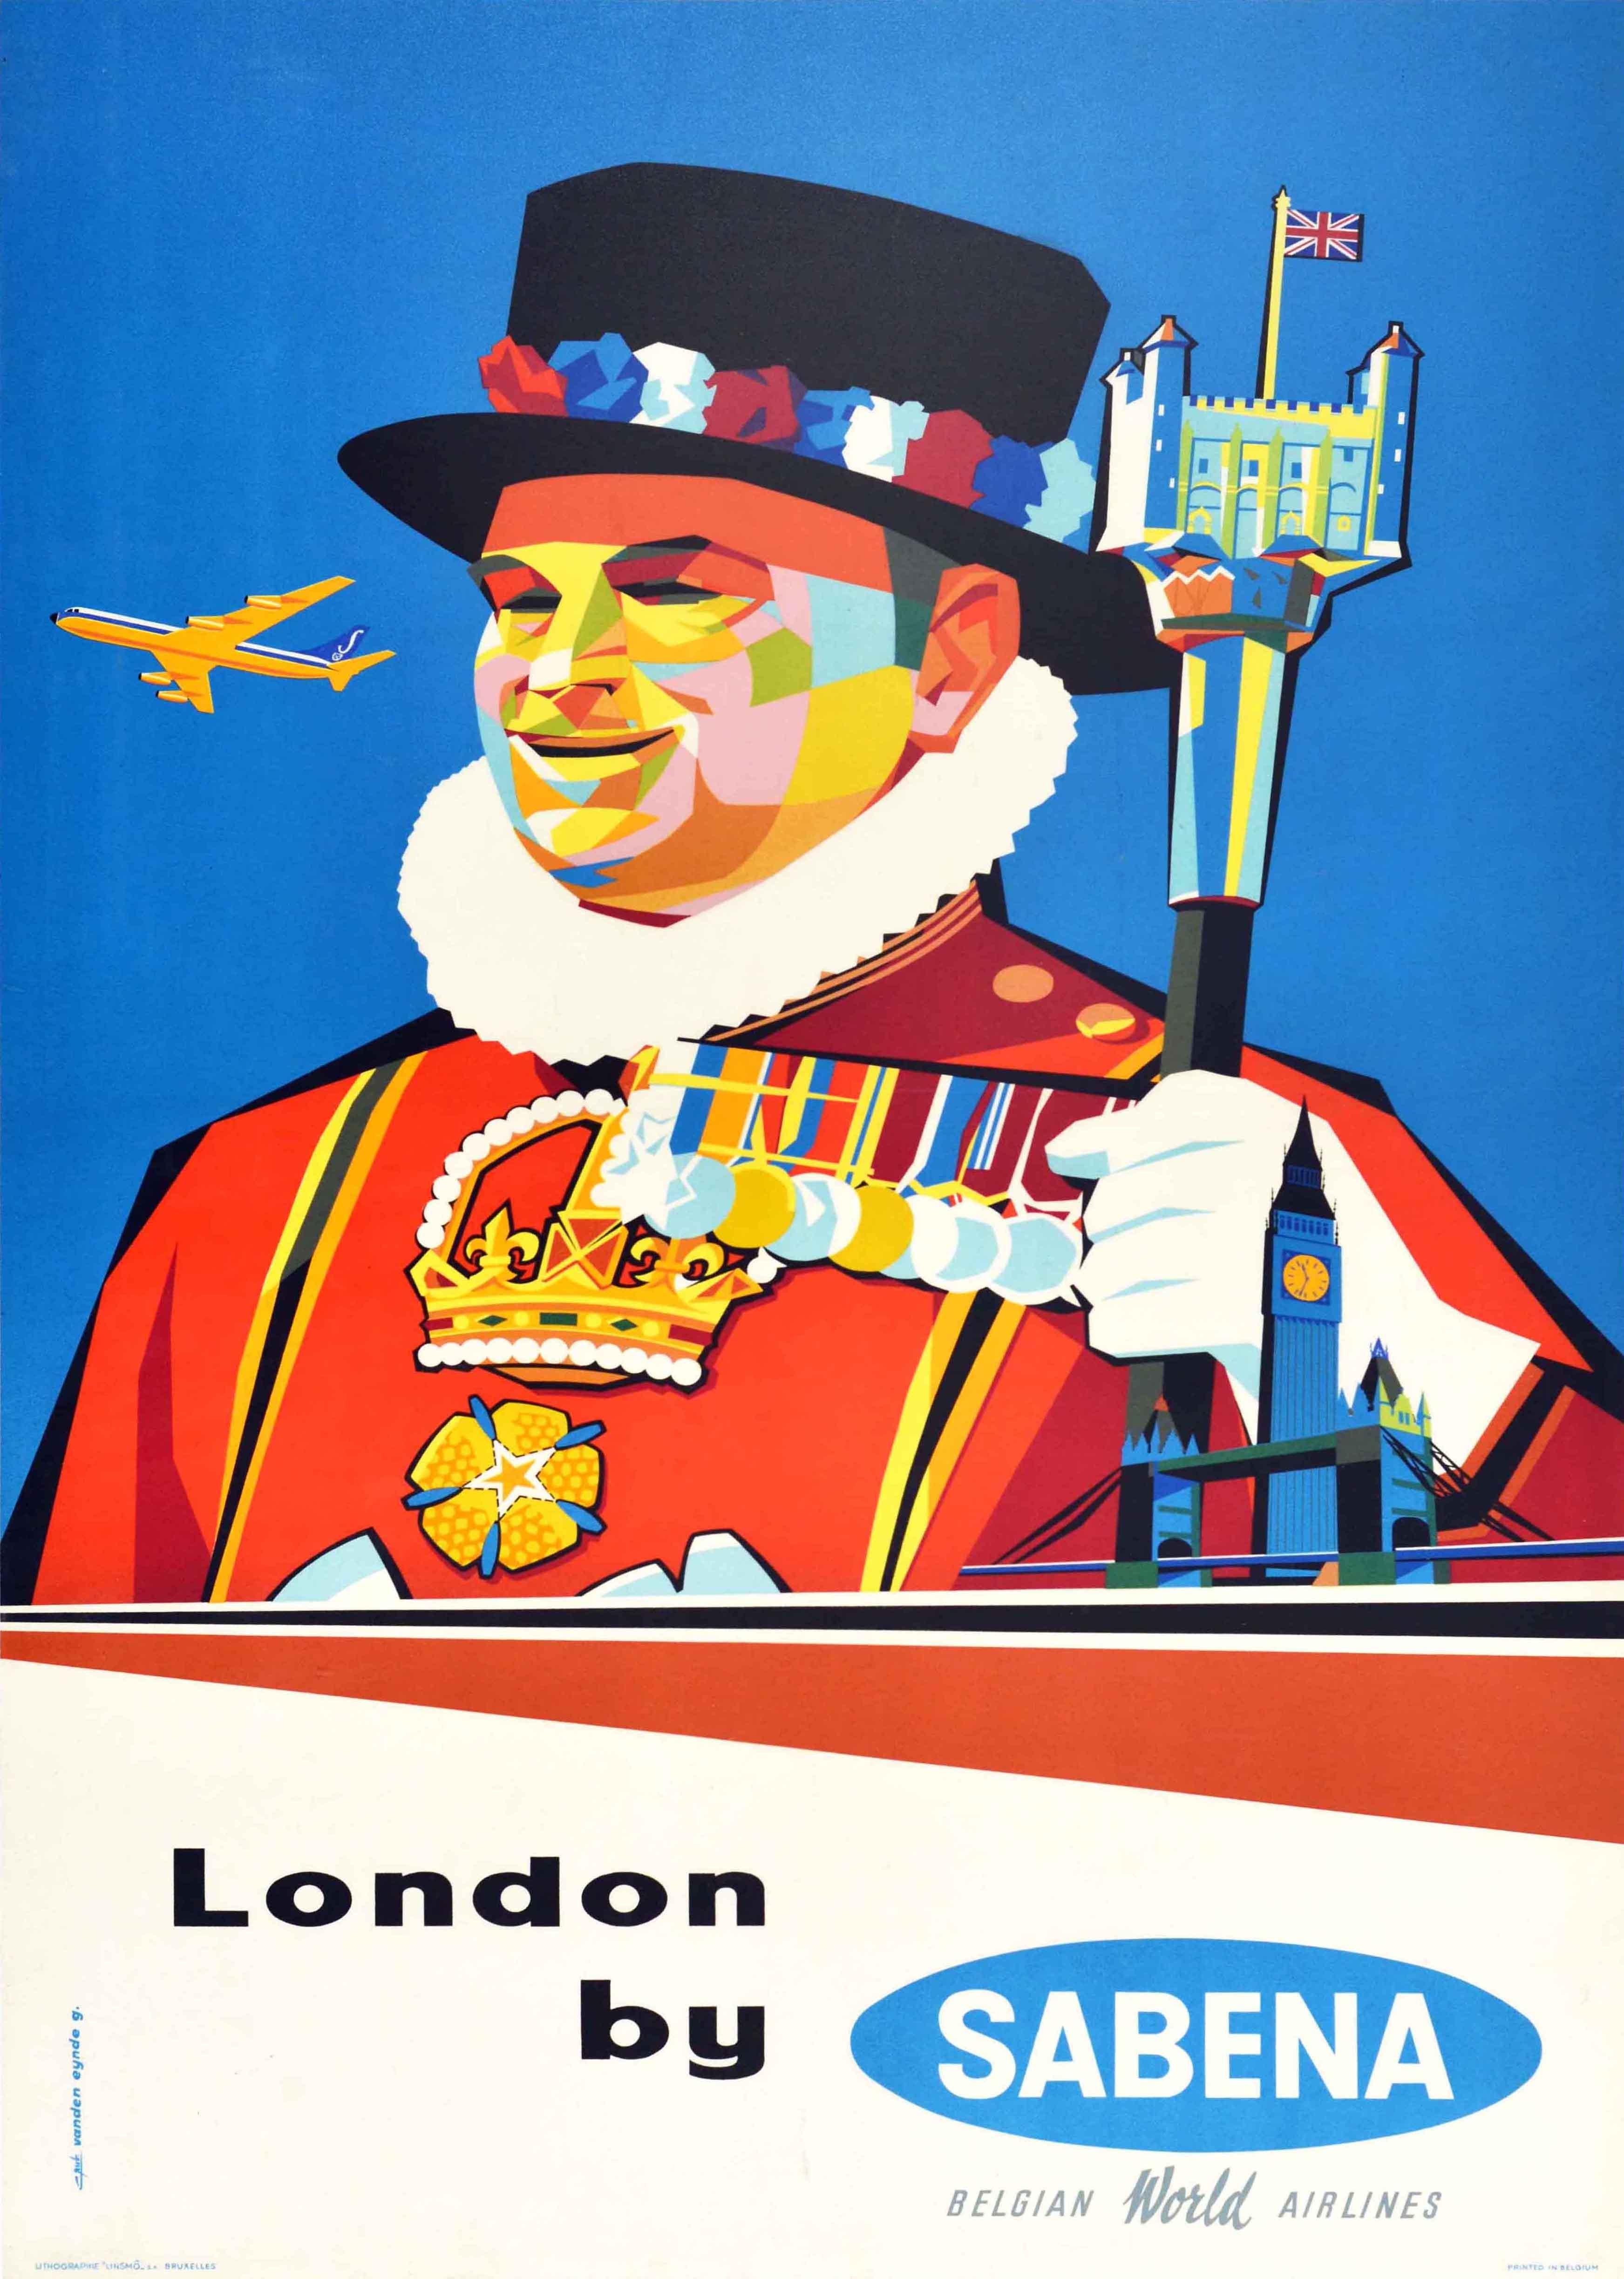 Gaston van den Eynde Print - Original Vintage Travel Poster Tower Of London Sabena Airlines Midcentury Design